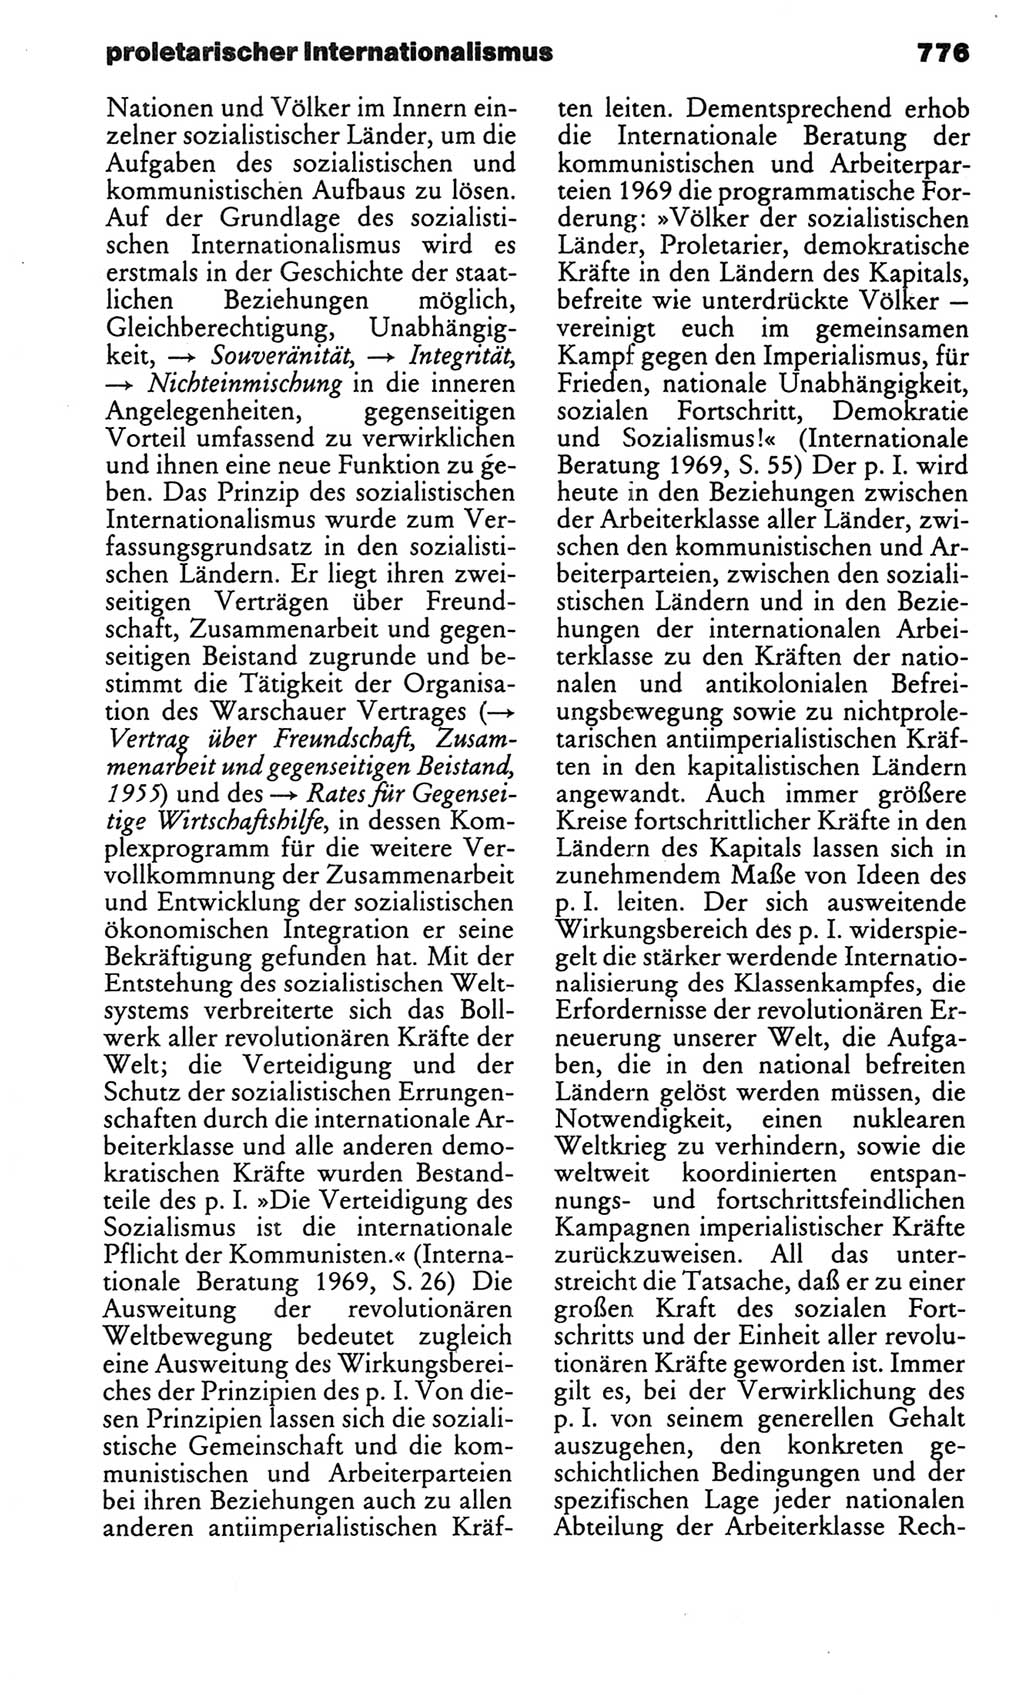 Kleines politisches Wörterbuch [Deutsche Demokratische Republik (DDR)] 1986, Seite 776 (Kl. pol. Wb. DDR 1986, S. 776)